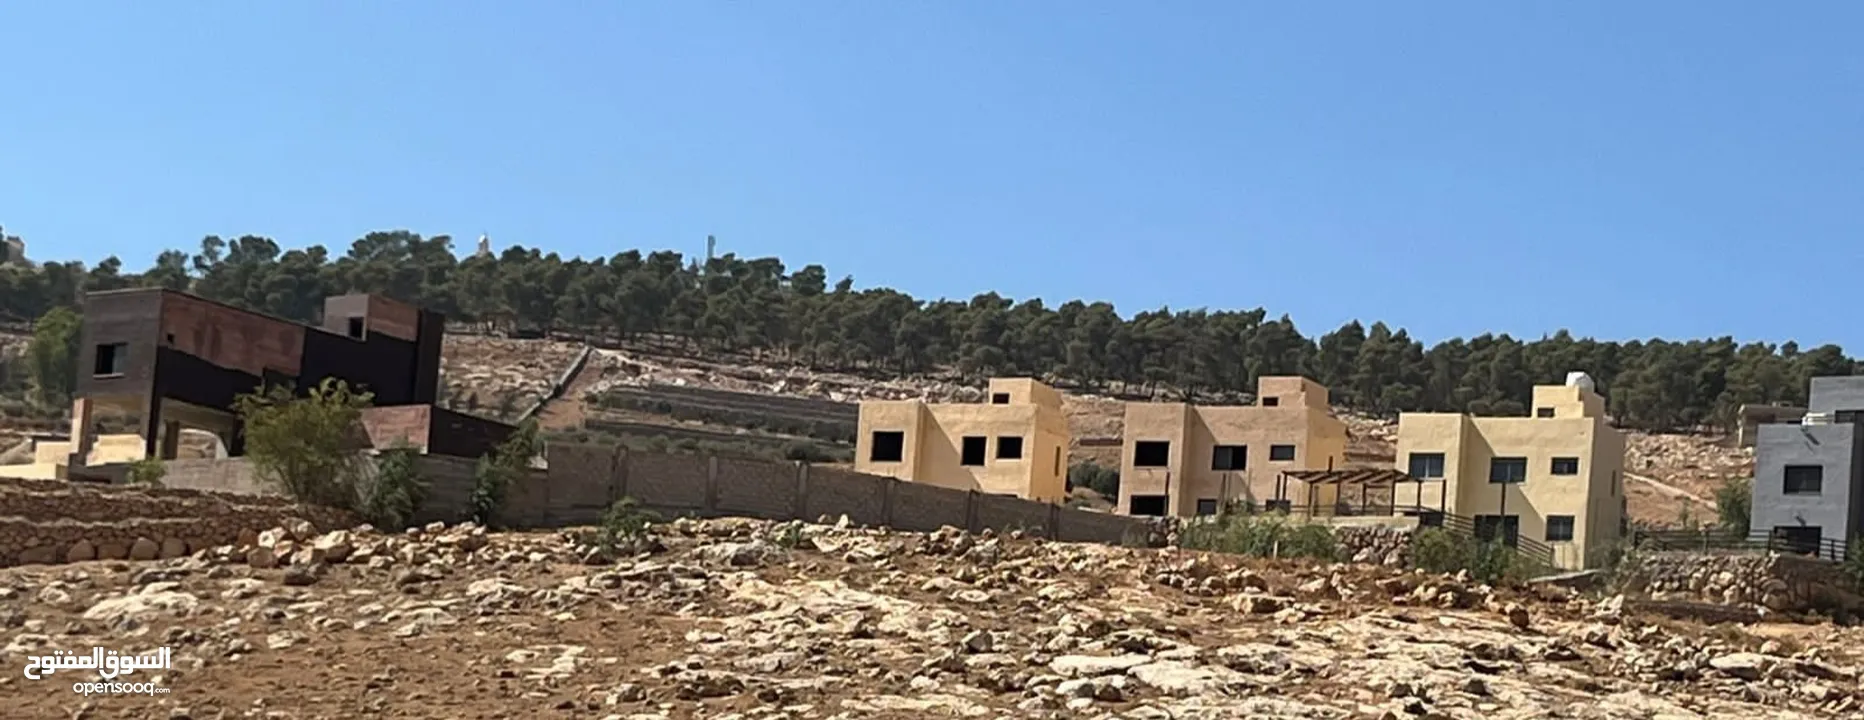 أرض 15دونم لبيع بسمر مغري خلف جامعة جرش وخلف مقام النبي هود في أشجار عمر 30سنه وبجانب شالات